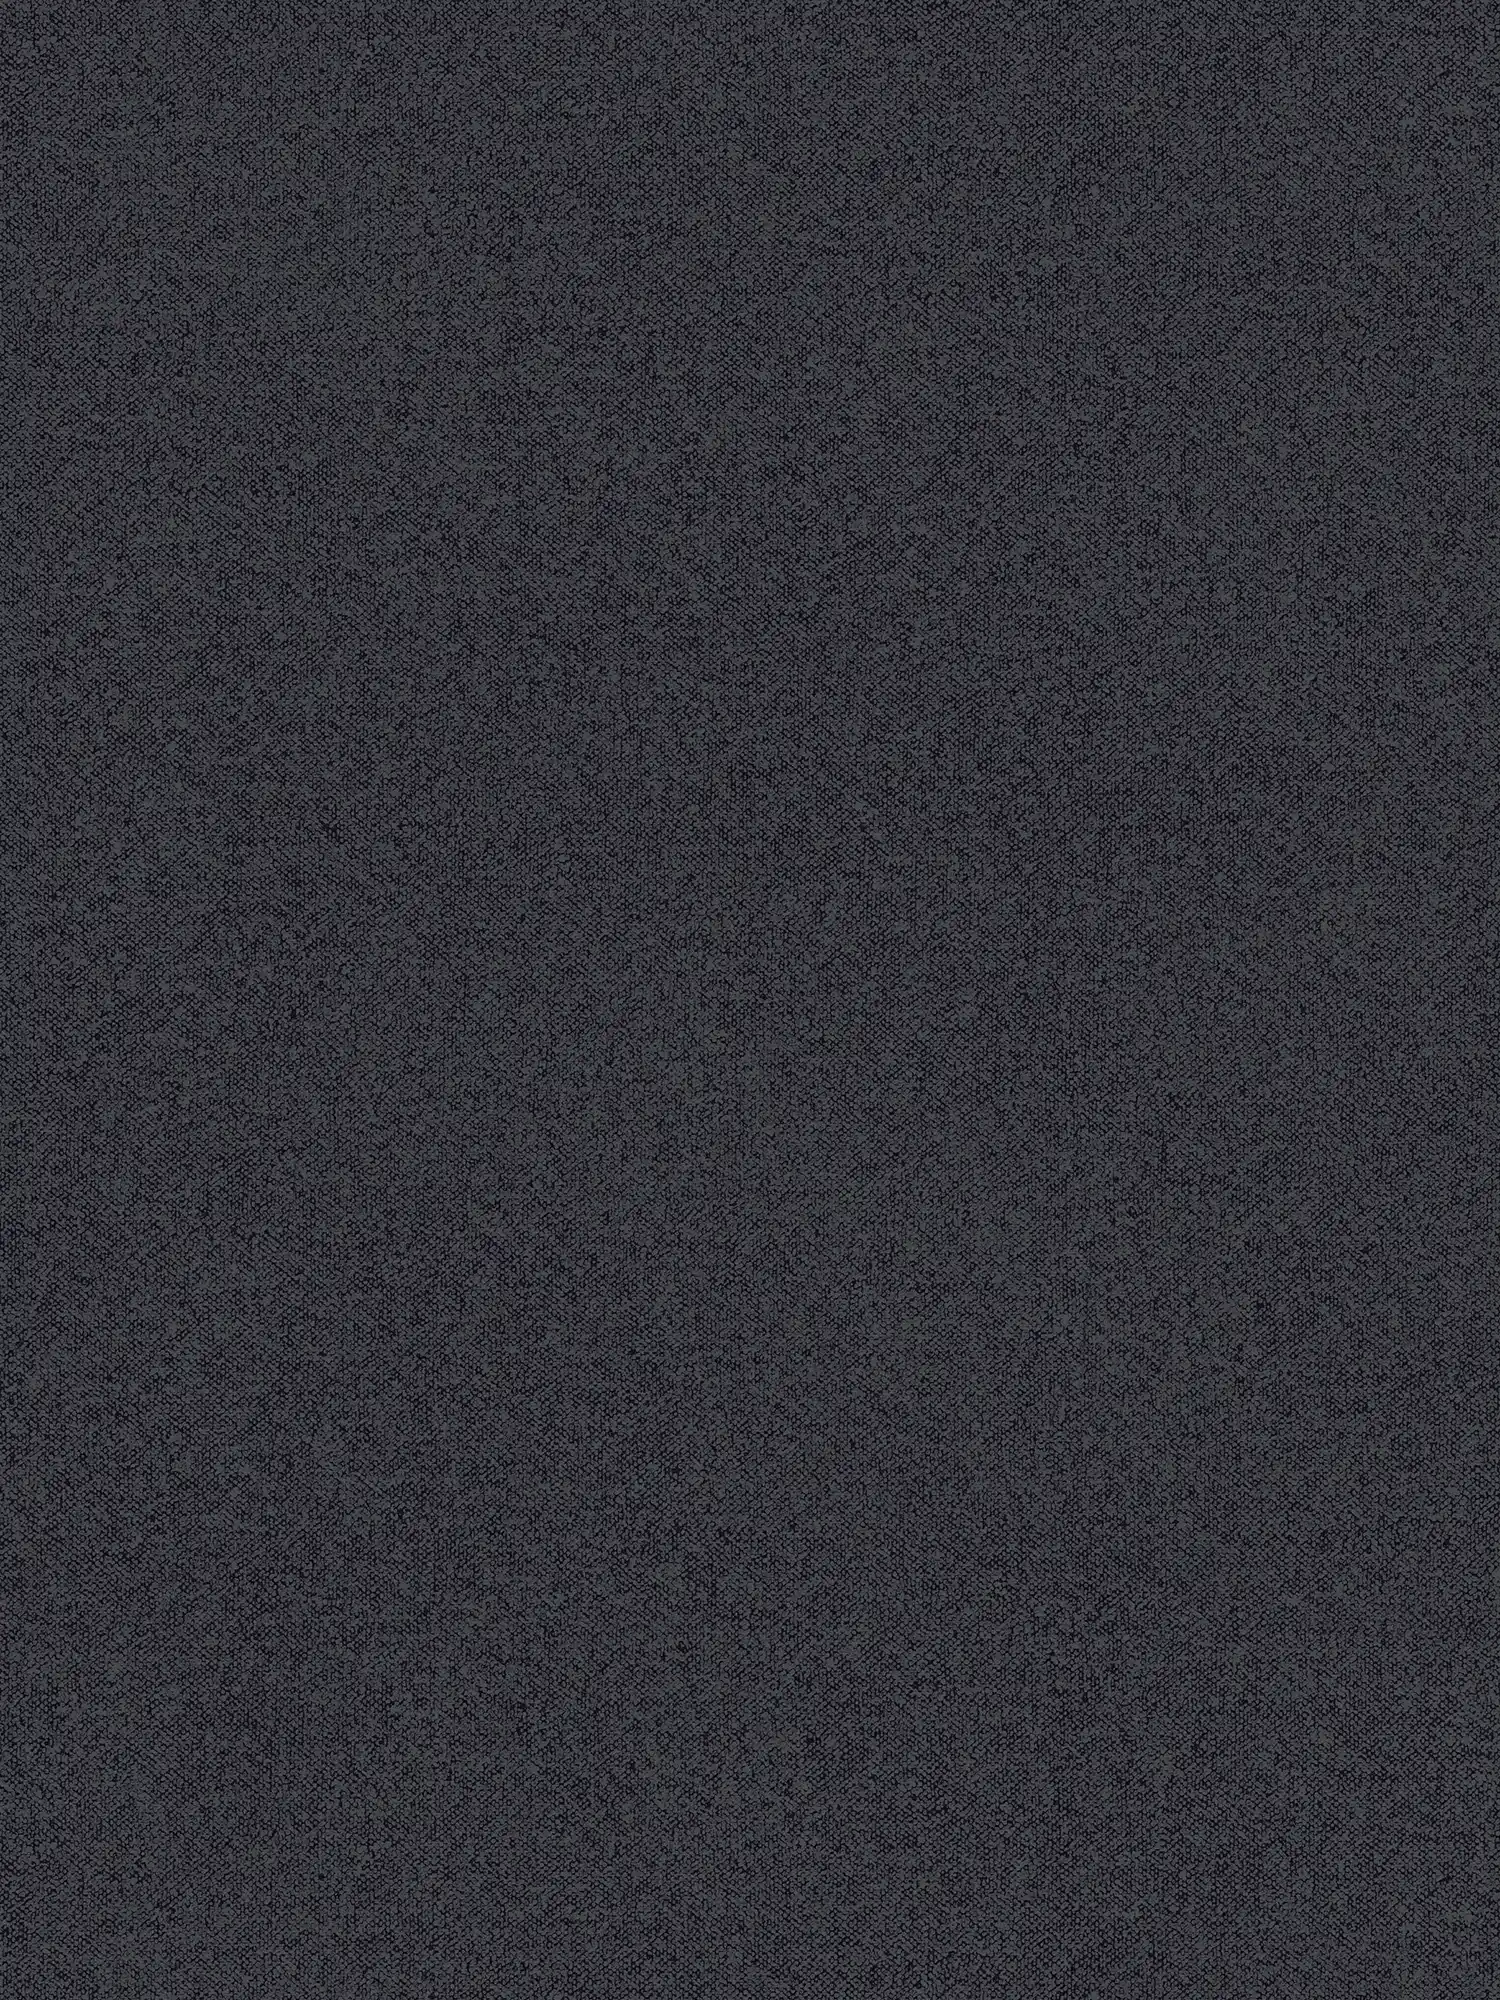 Strukturtapete Uni mit Leinen-Optik – Schwarz, Grau
